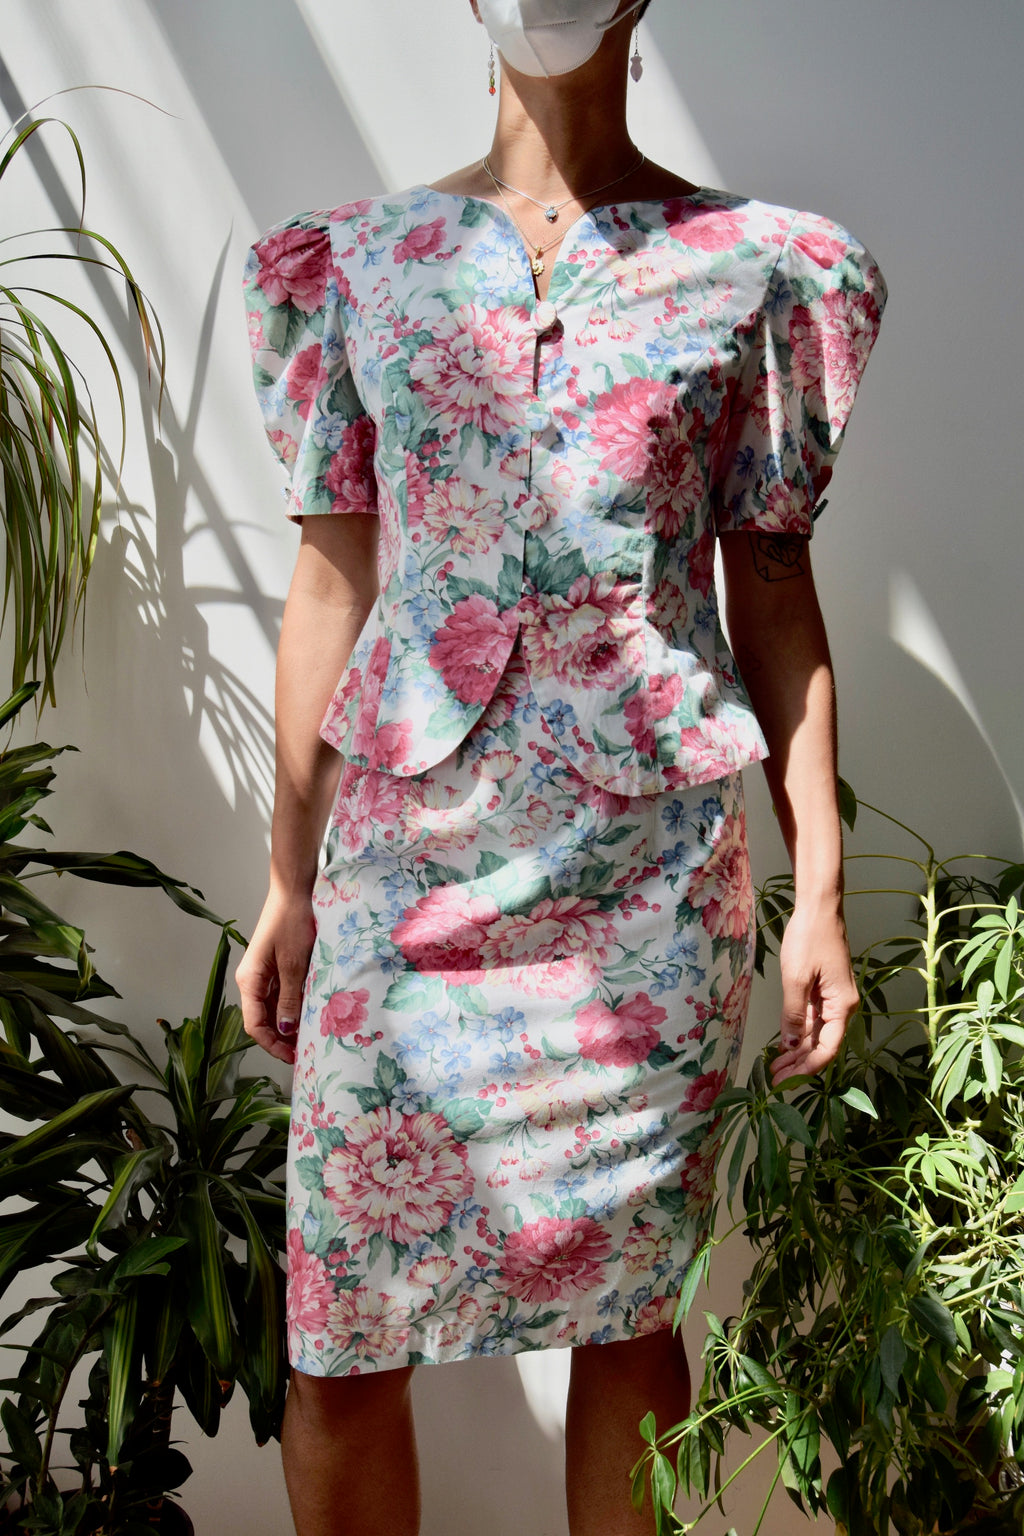 Nineties Floral Wallpaper Suit